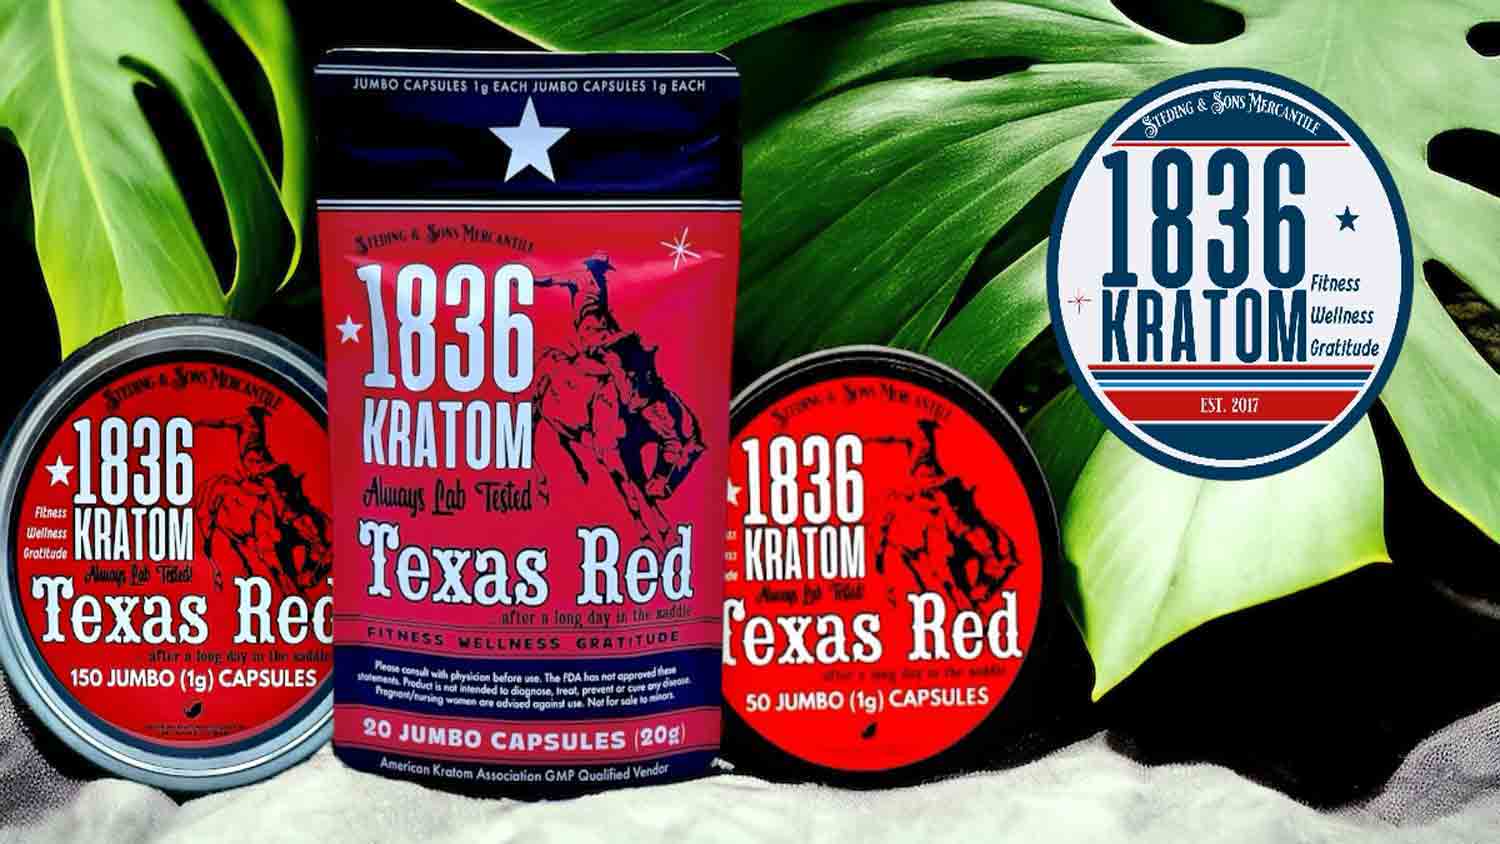 1836 Kratom Texas Red Kratom Jumbo Capsules 20ct, 50ct, & 150ct